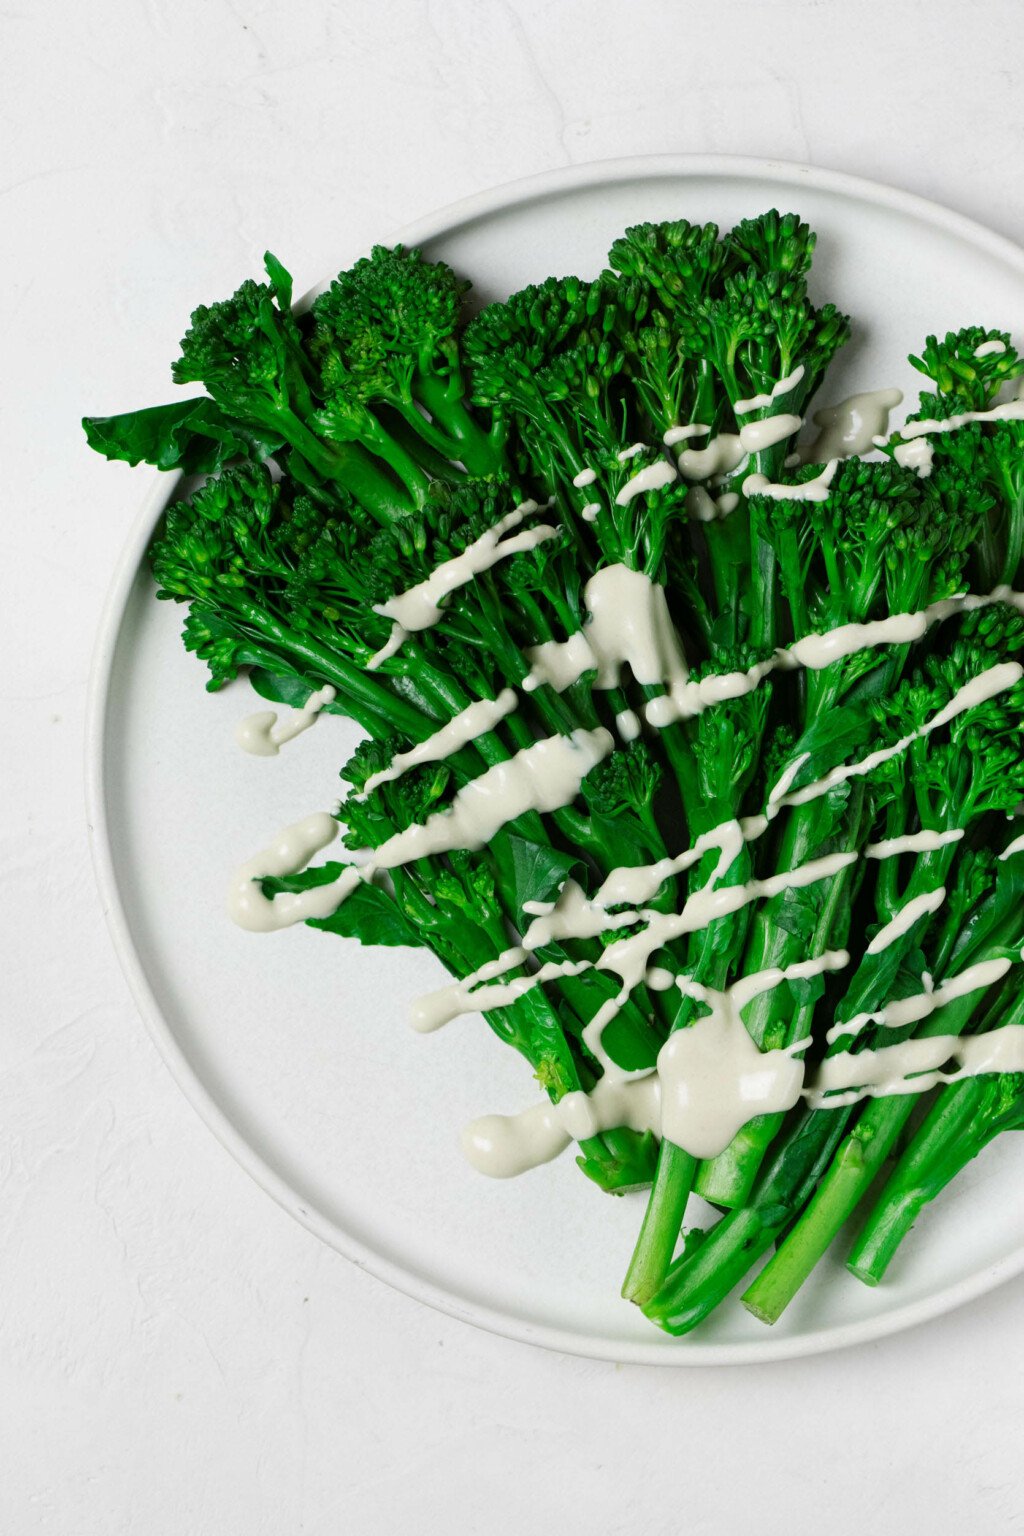 Ein Bild von oben: hellgrüner, gedämpfter Broccolini, der auf einem weißen, runden Teller ruht.  Der Broccolini wird mit einem cremig-weißen Tahini-Dressing beträufelt.